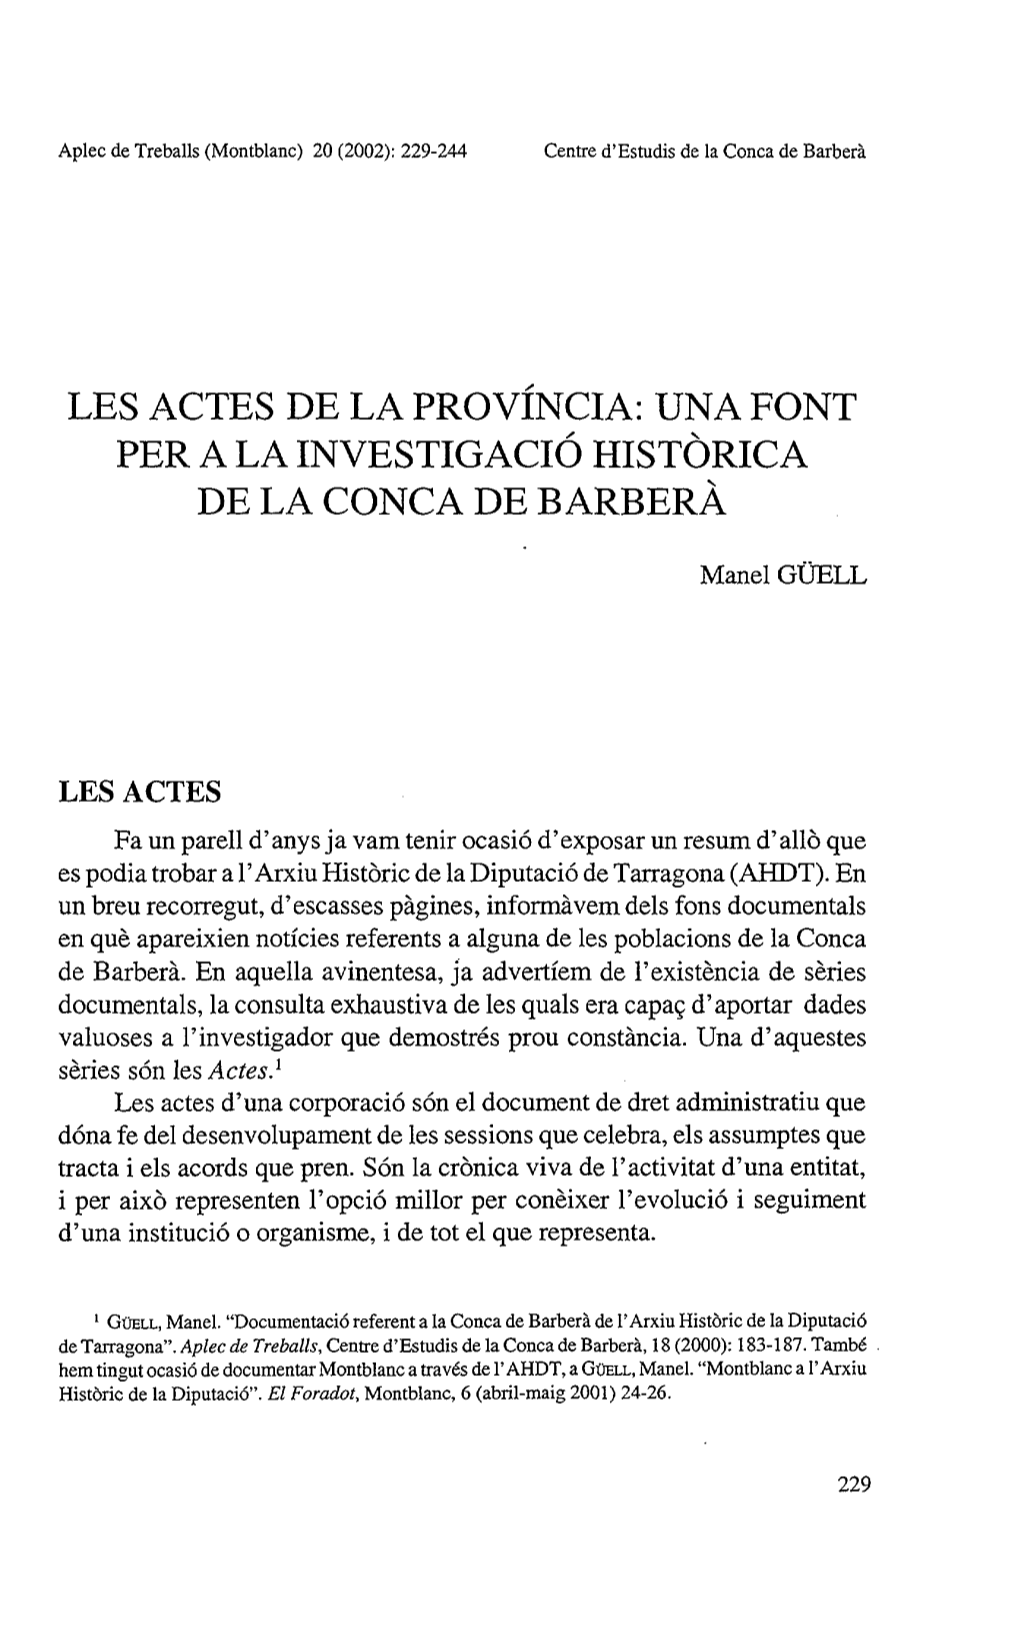 Les Actes De La Província: Una Font Per La Investigació Històrica De La